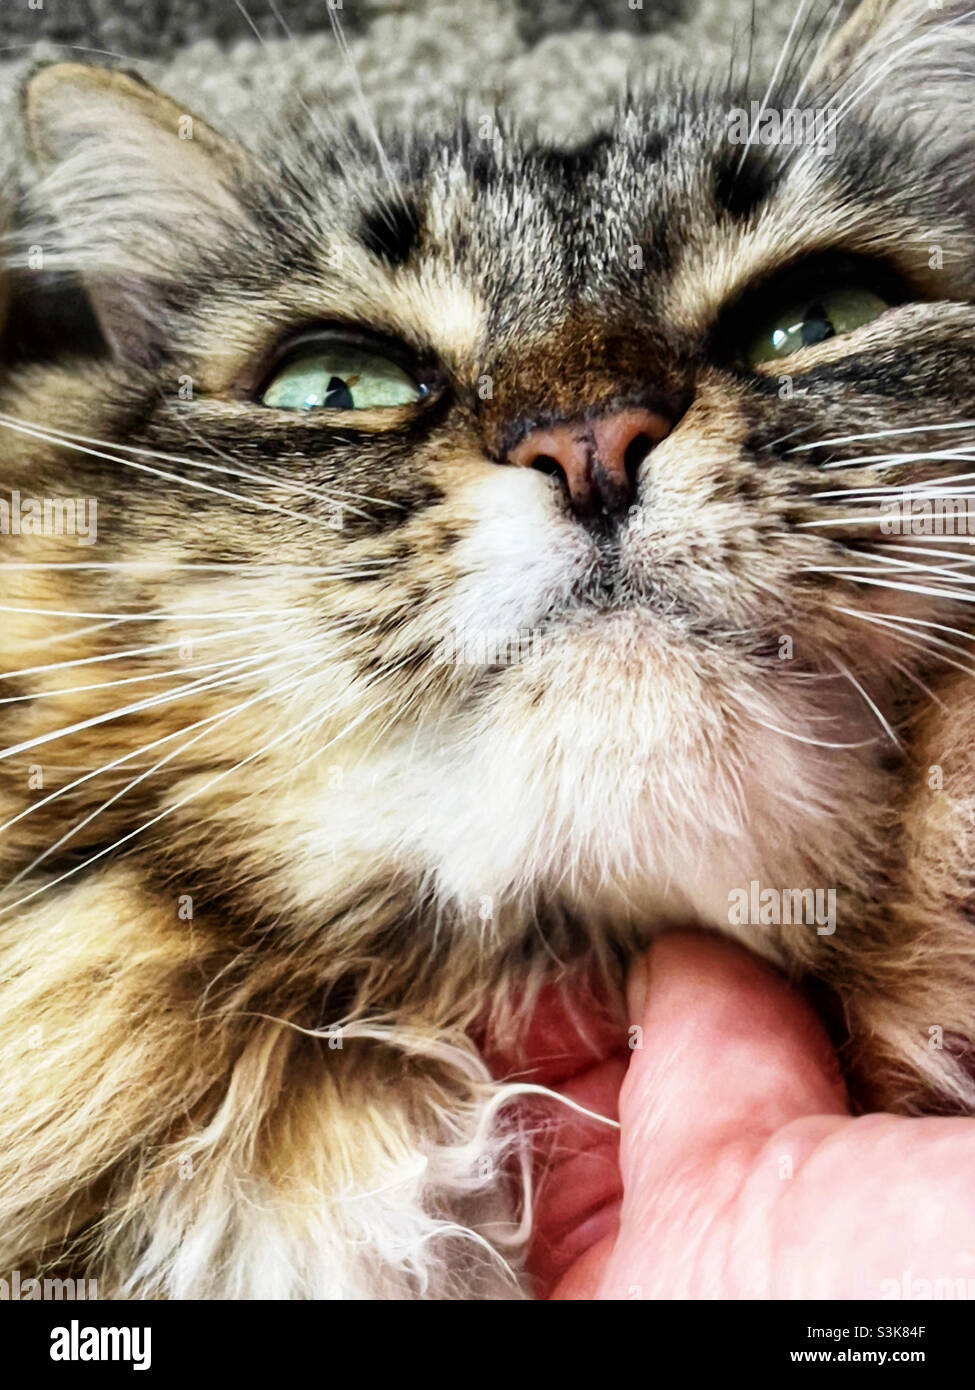 Chat kitty domestique à poil long se frotte contre son menton. Banque D'Images